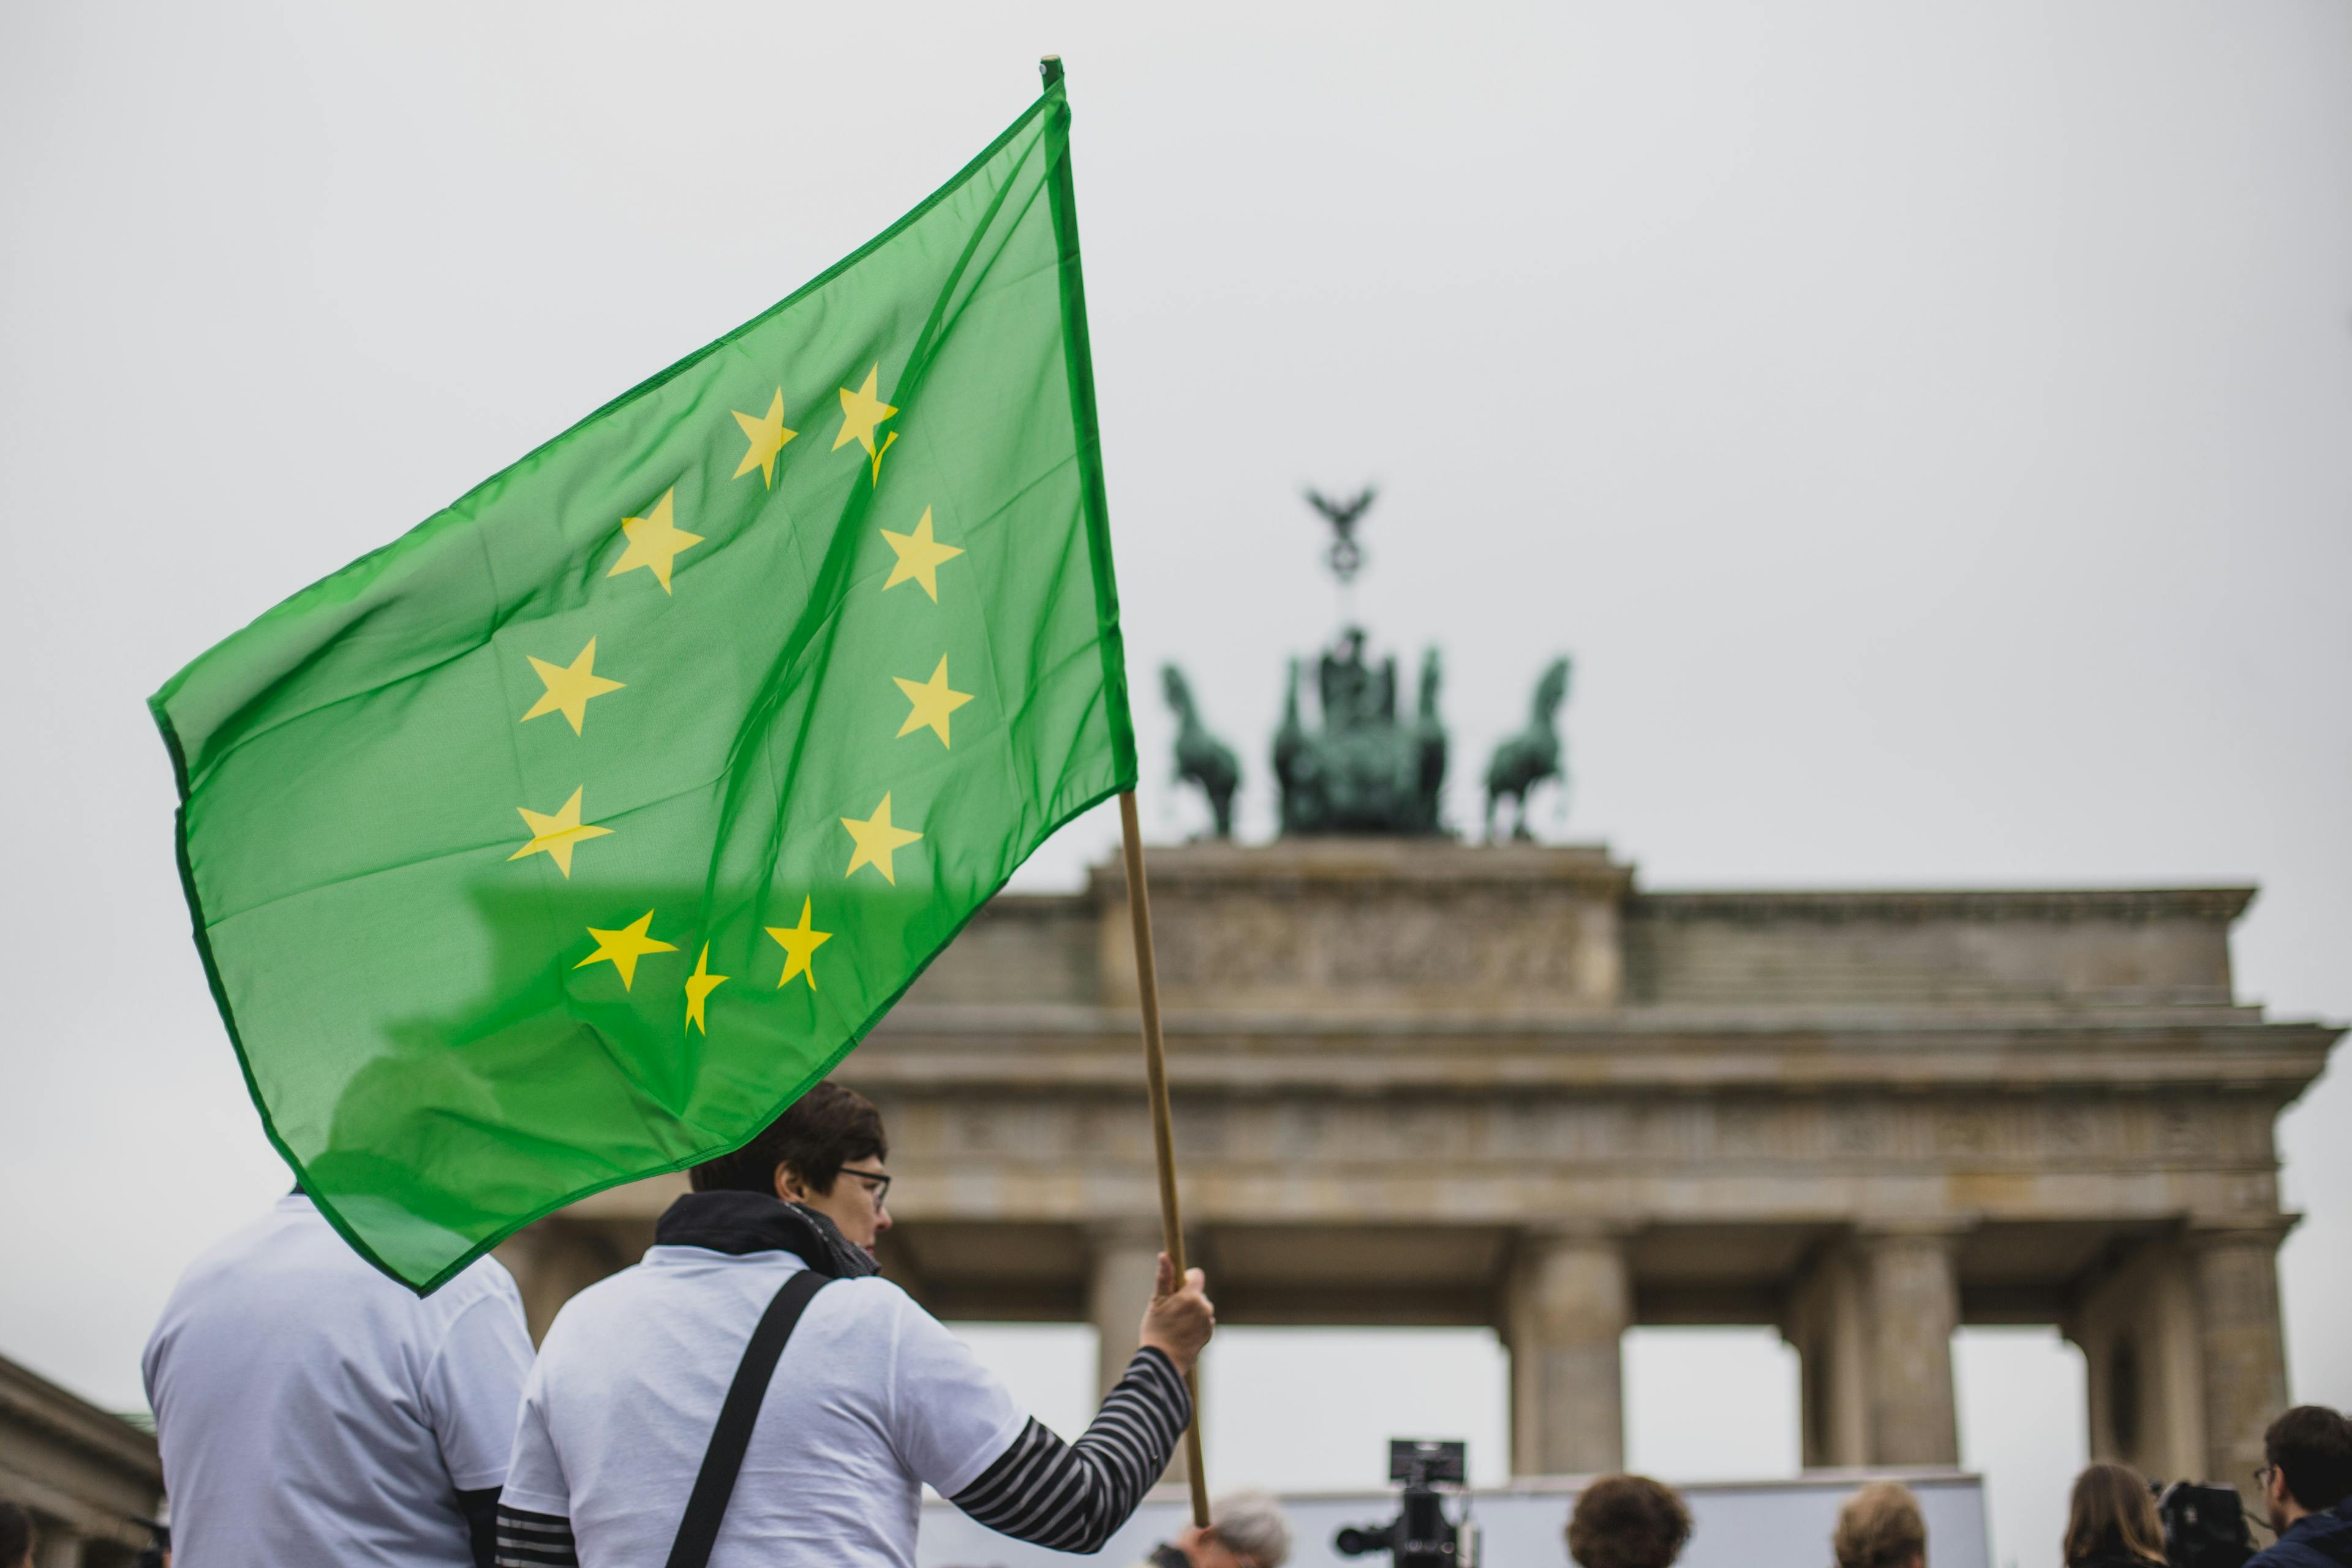 Zwei Menschen mit einer grünen Europafahne sind vor dem Brandenburger Tor zu sehen.